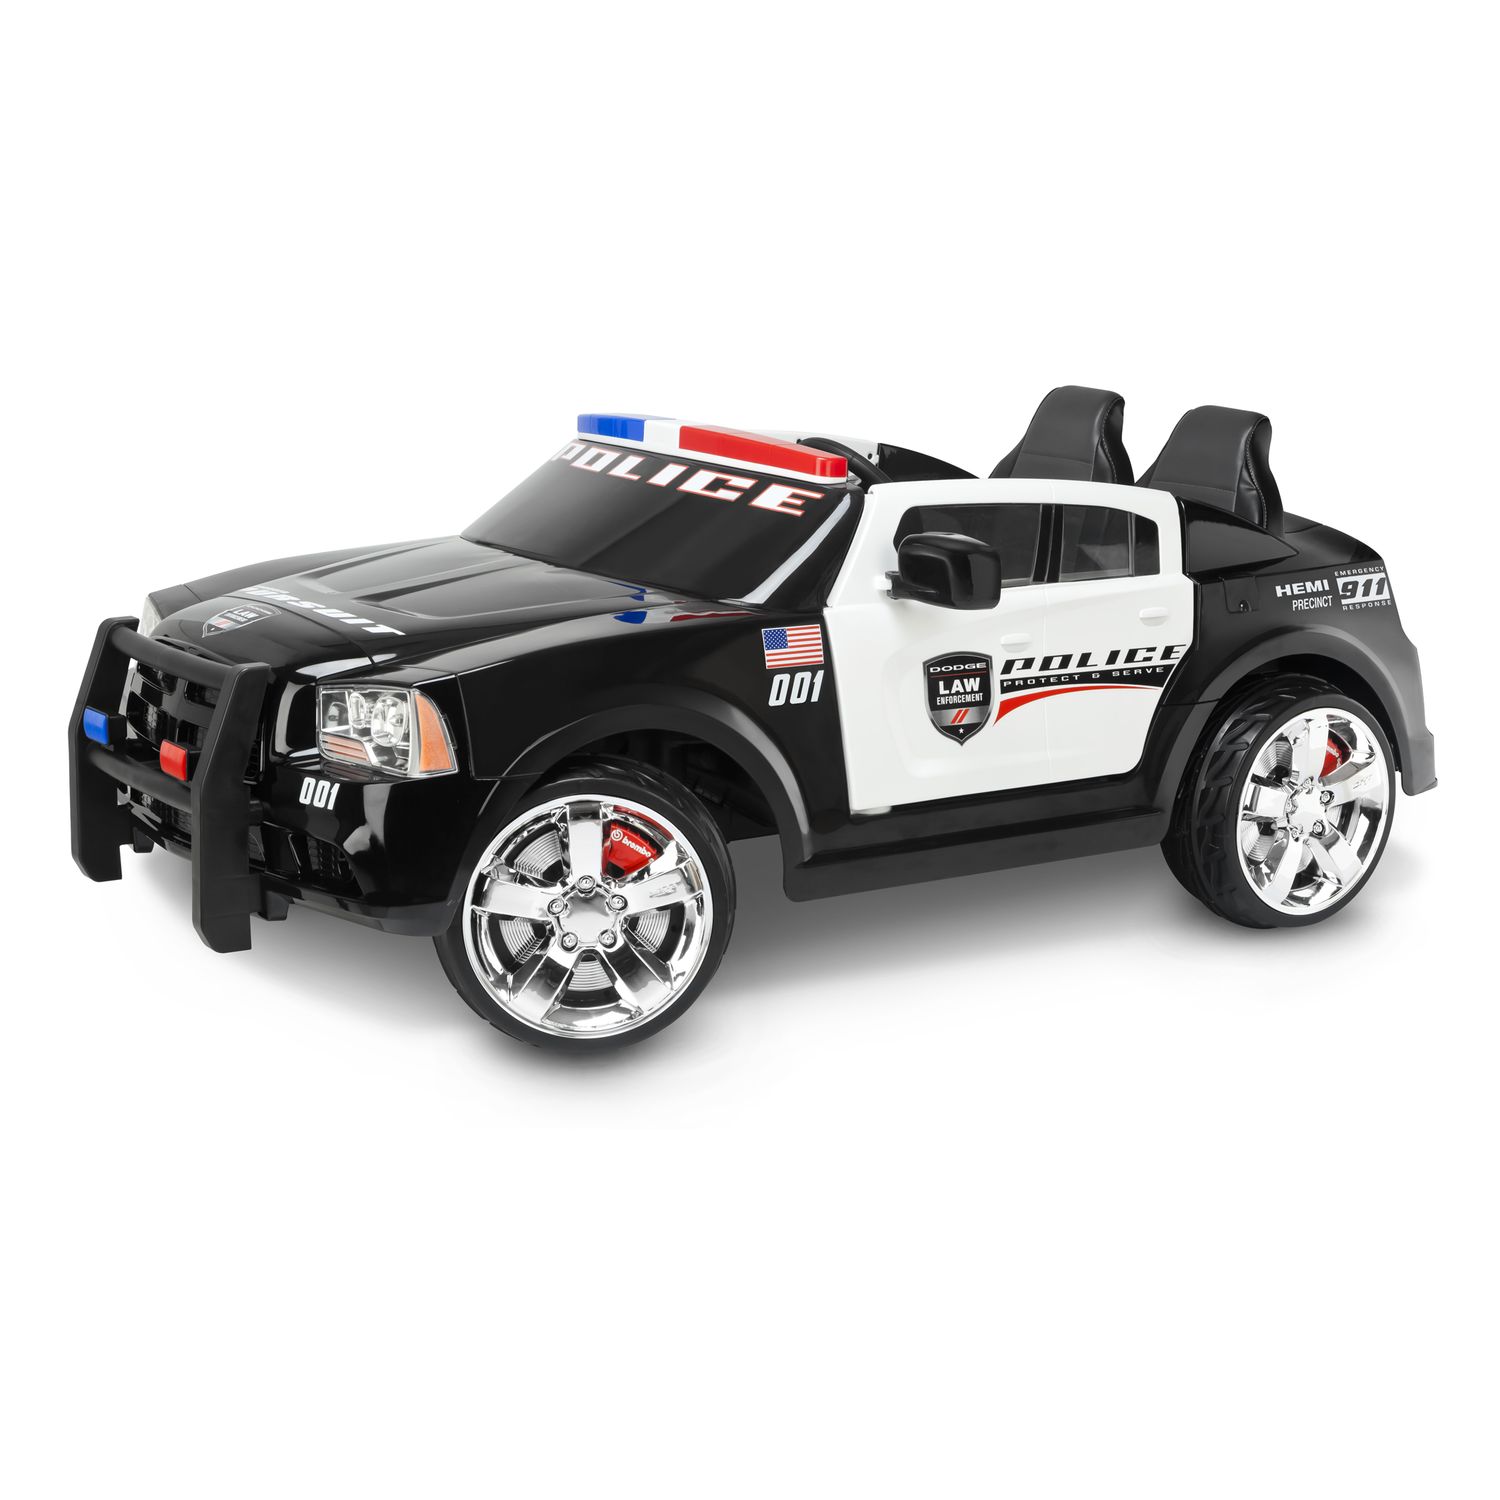 kids motorized police car